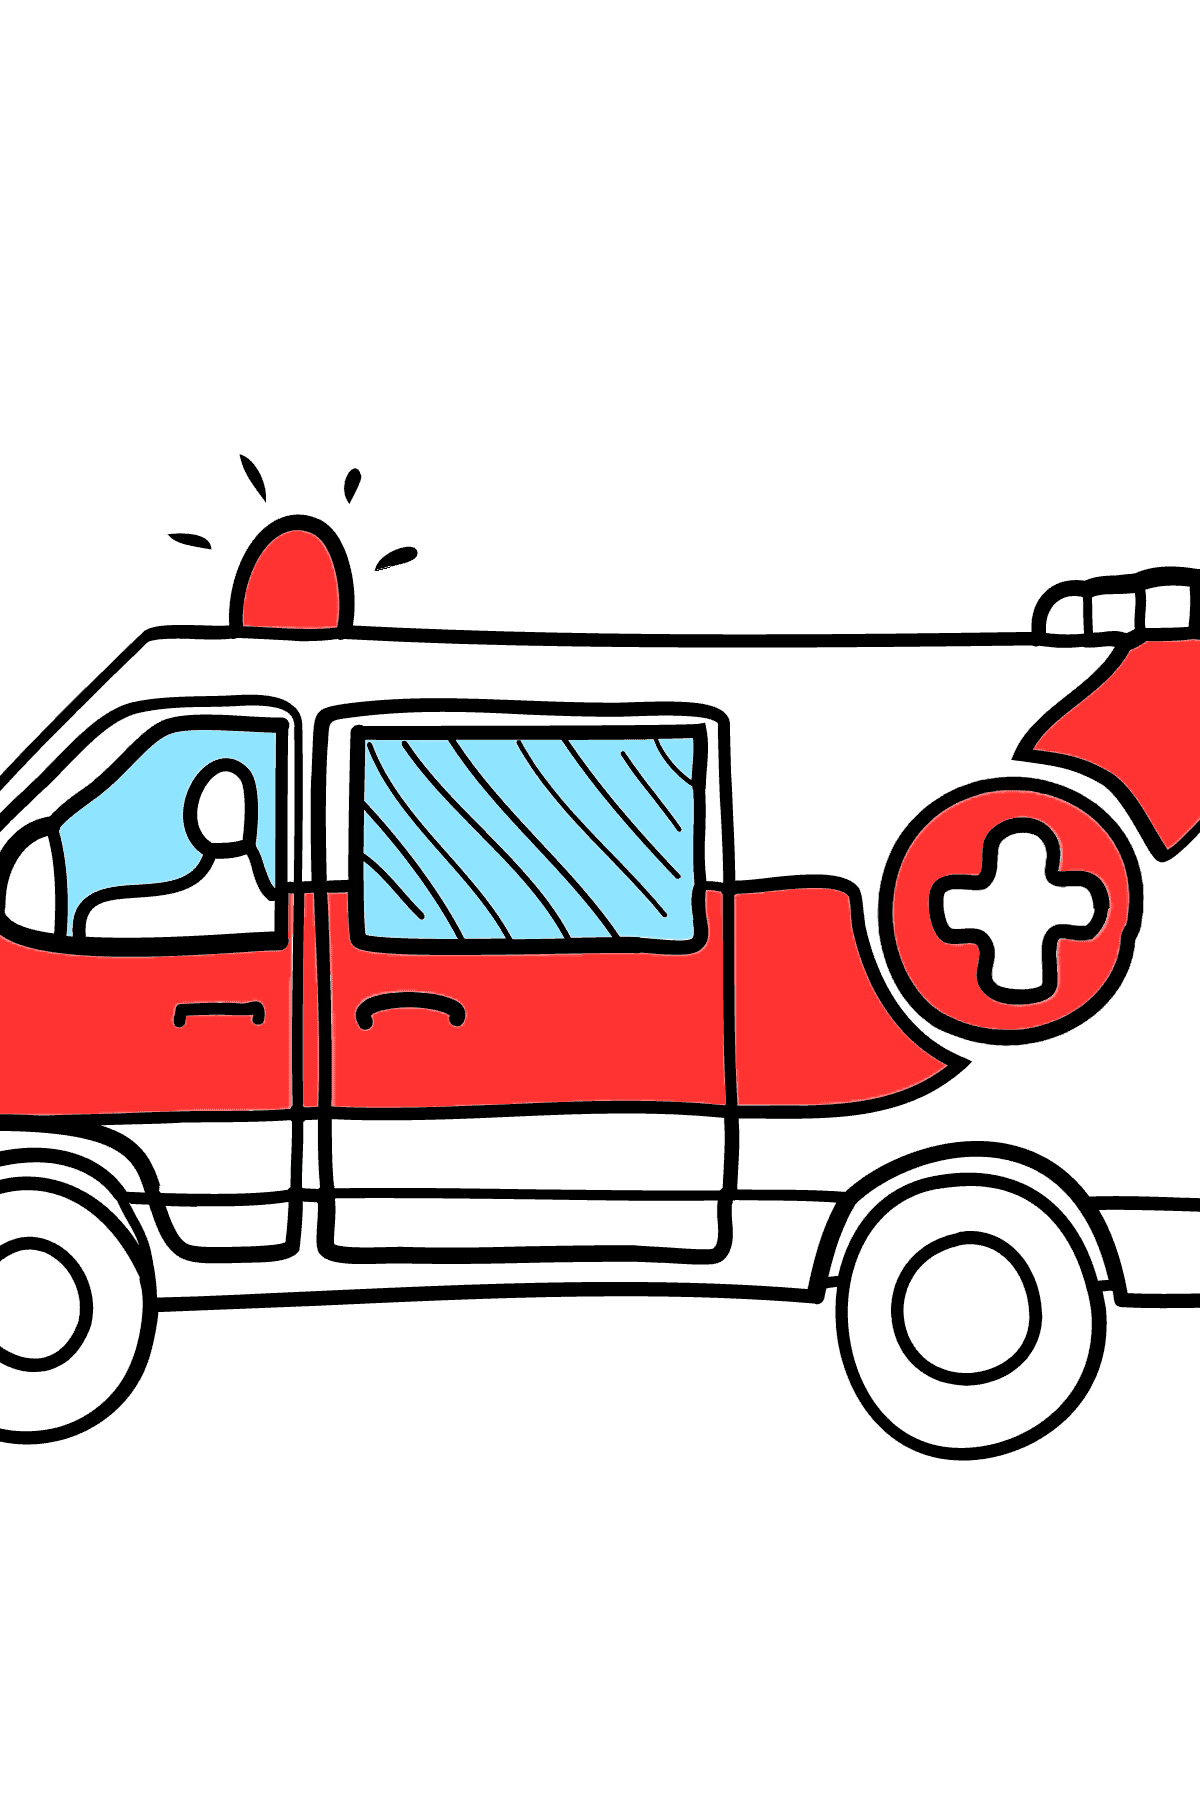 Krankenwagen Ausmalbild - Malvorlagen für Kinder